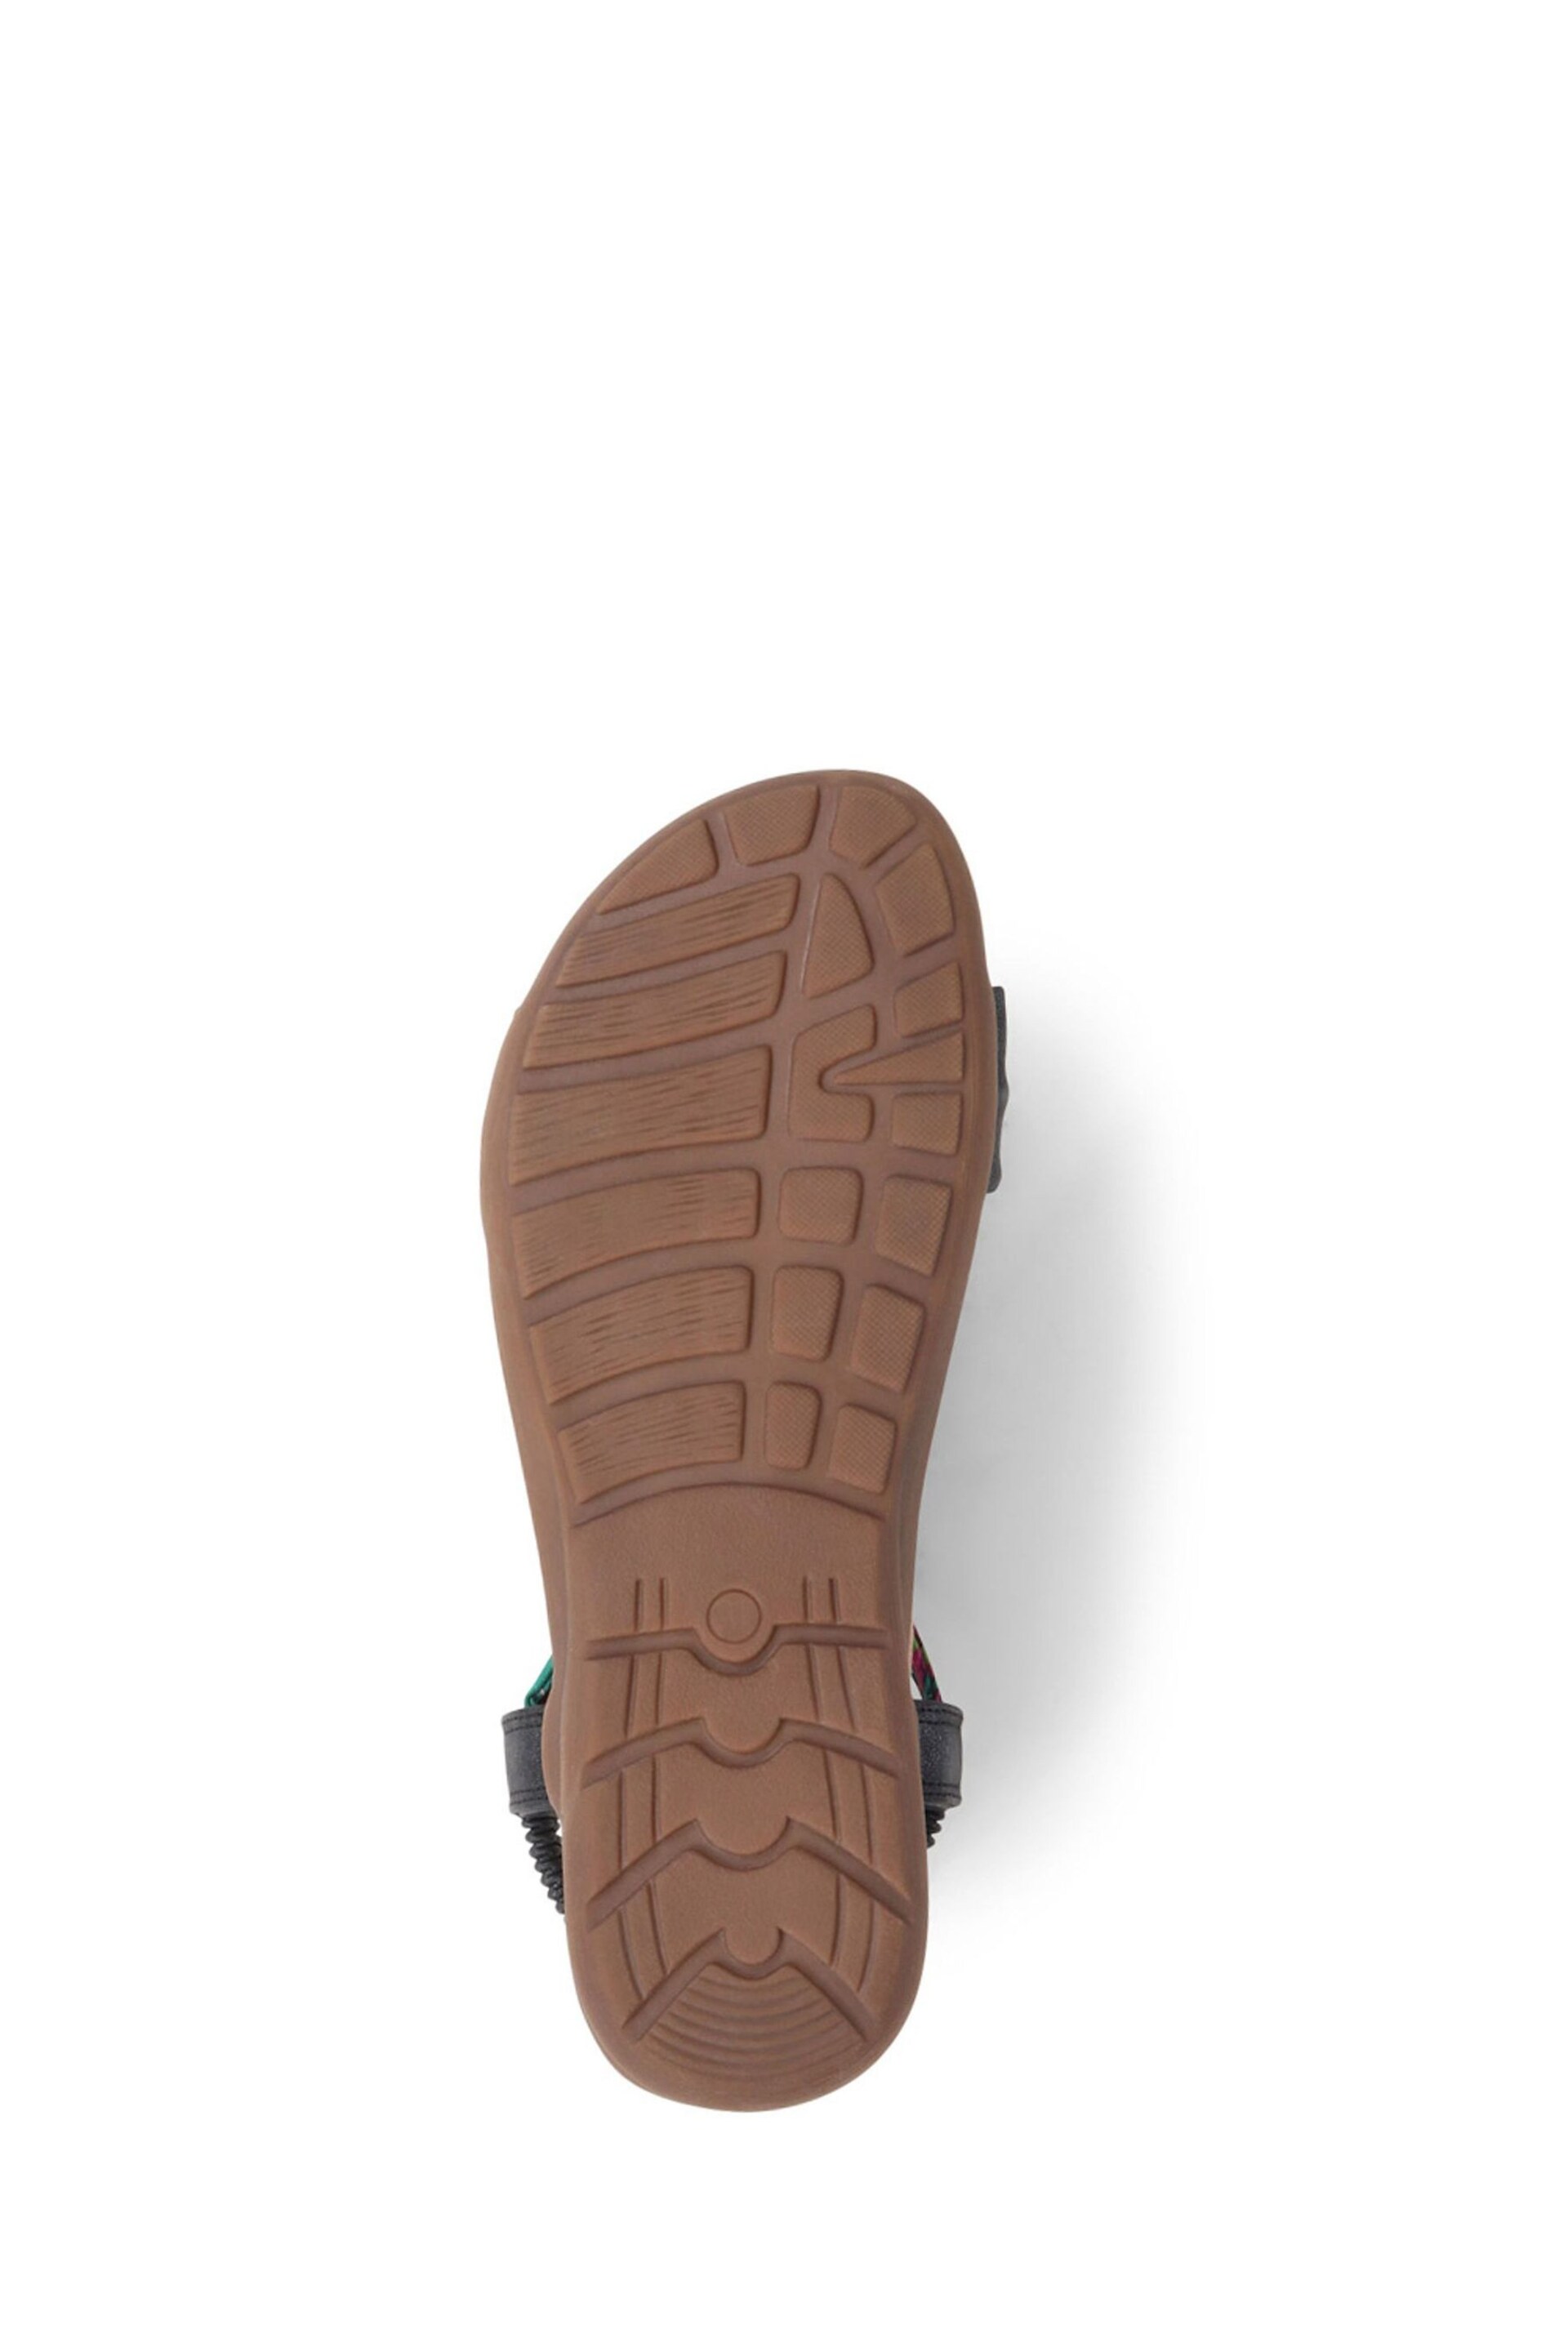 Pavers Embellished Flat Black Sandals - Image 6 of 6